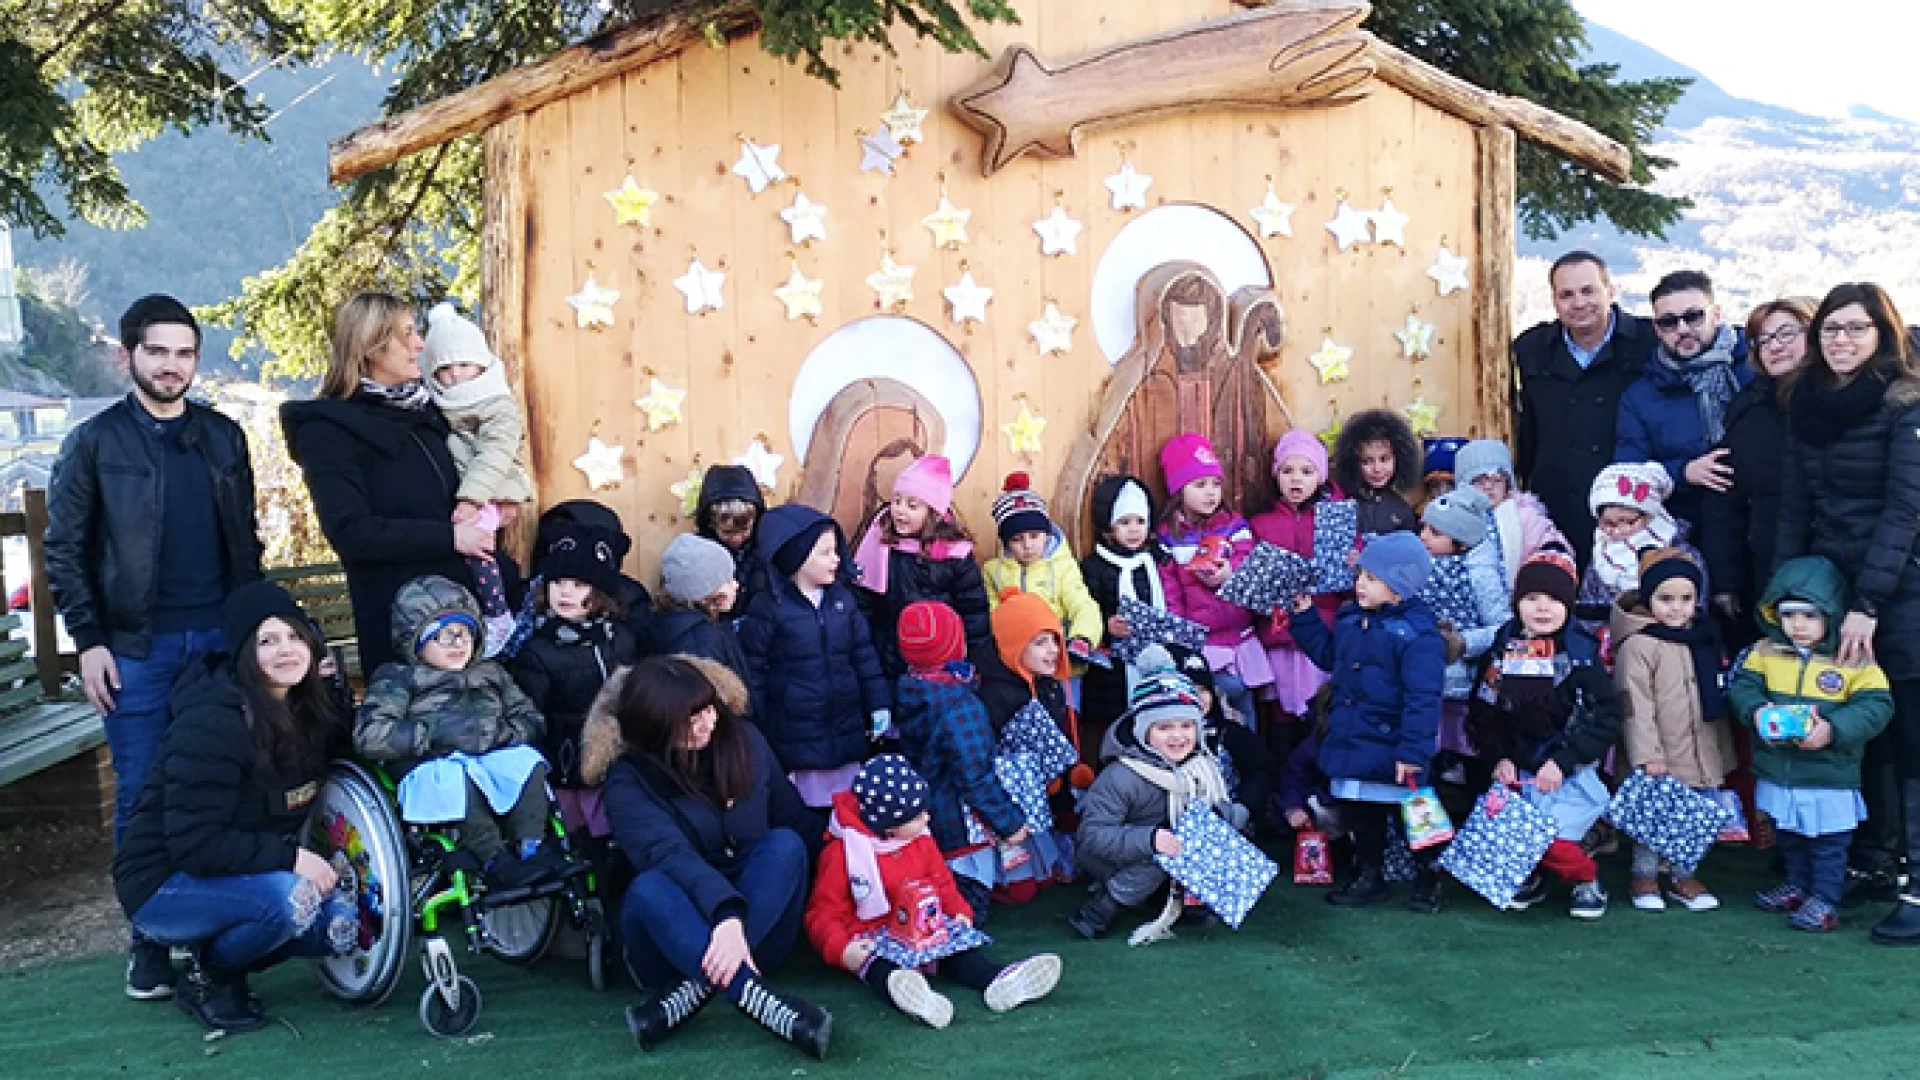 Colli a Volturno: il Natale dei piccoli nel nostro servizio video. Evento proposto dall'Amministrazione comunale cittadina